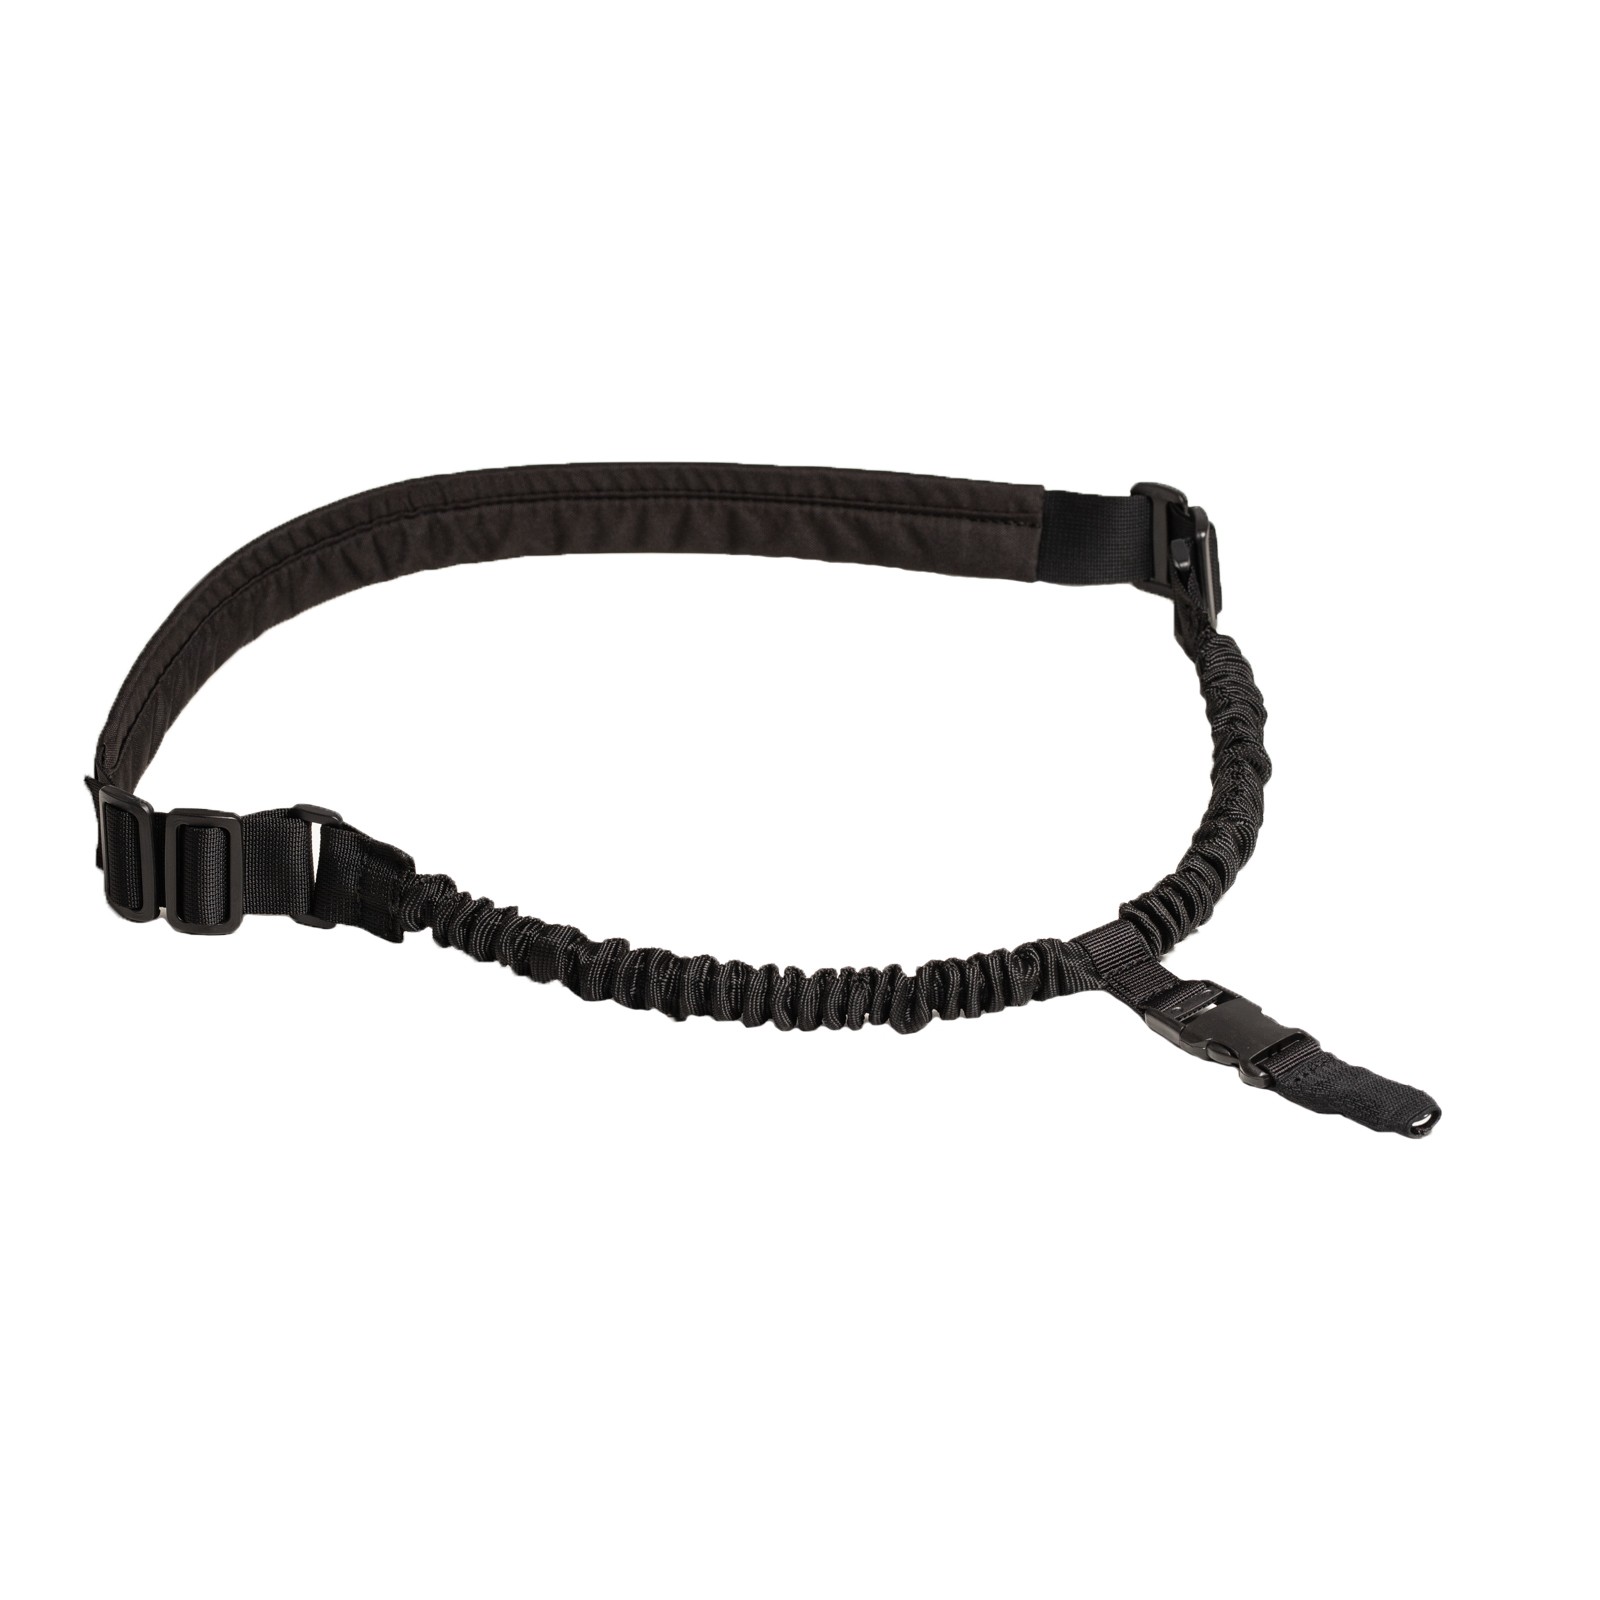 elastic black sling, strap for weapon with shoulder